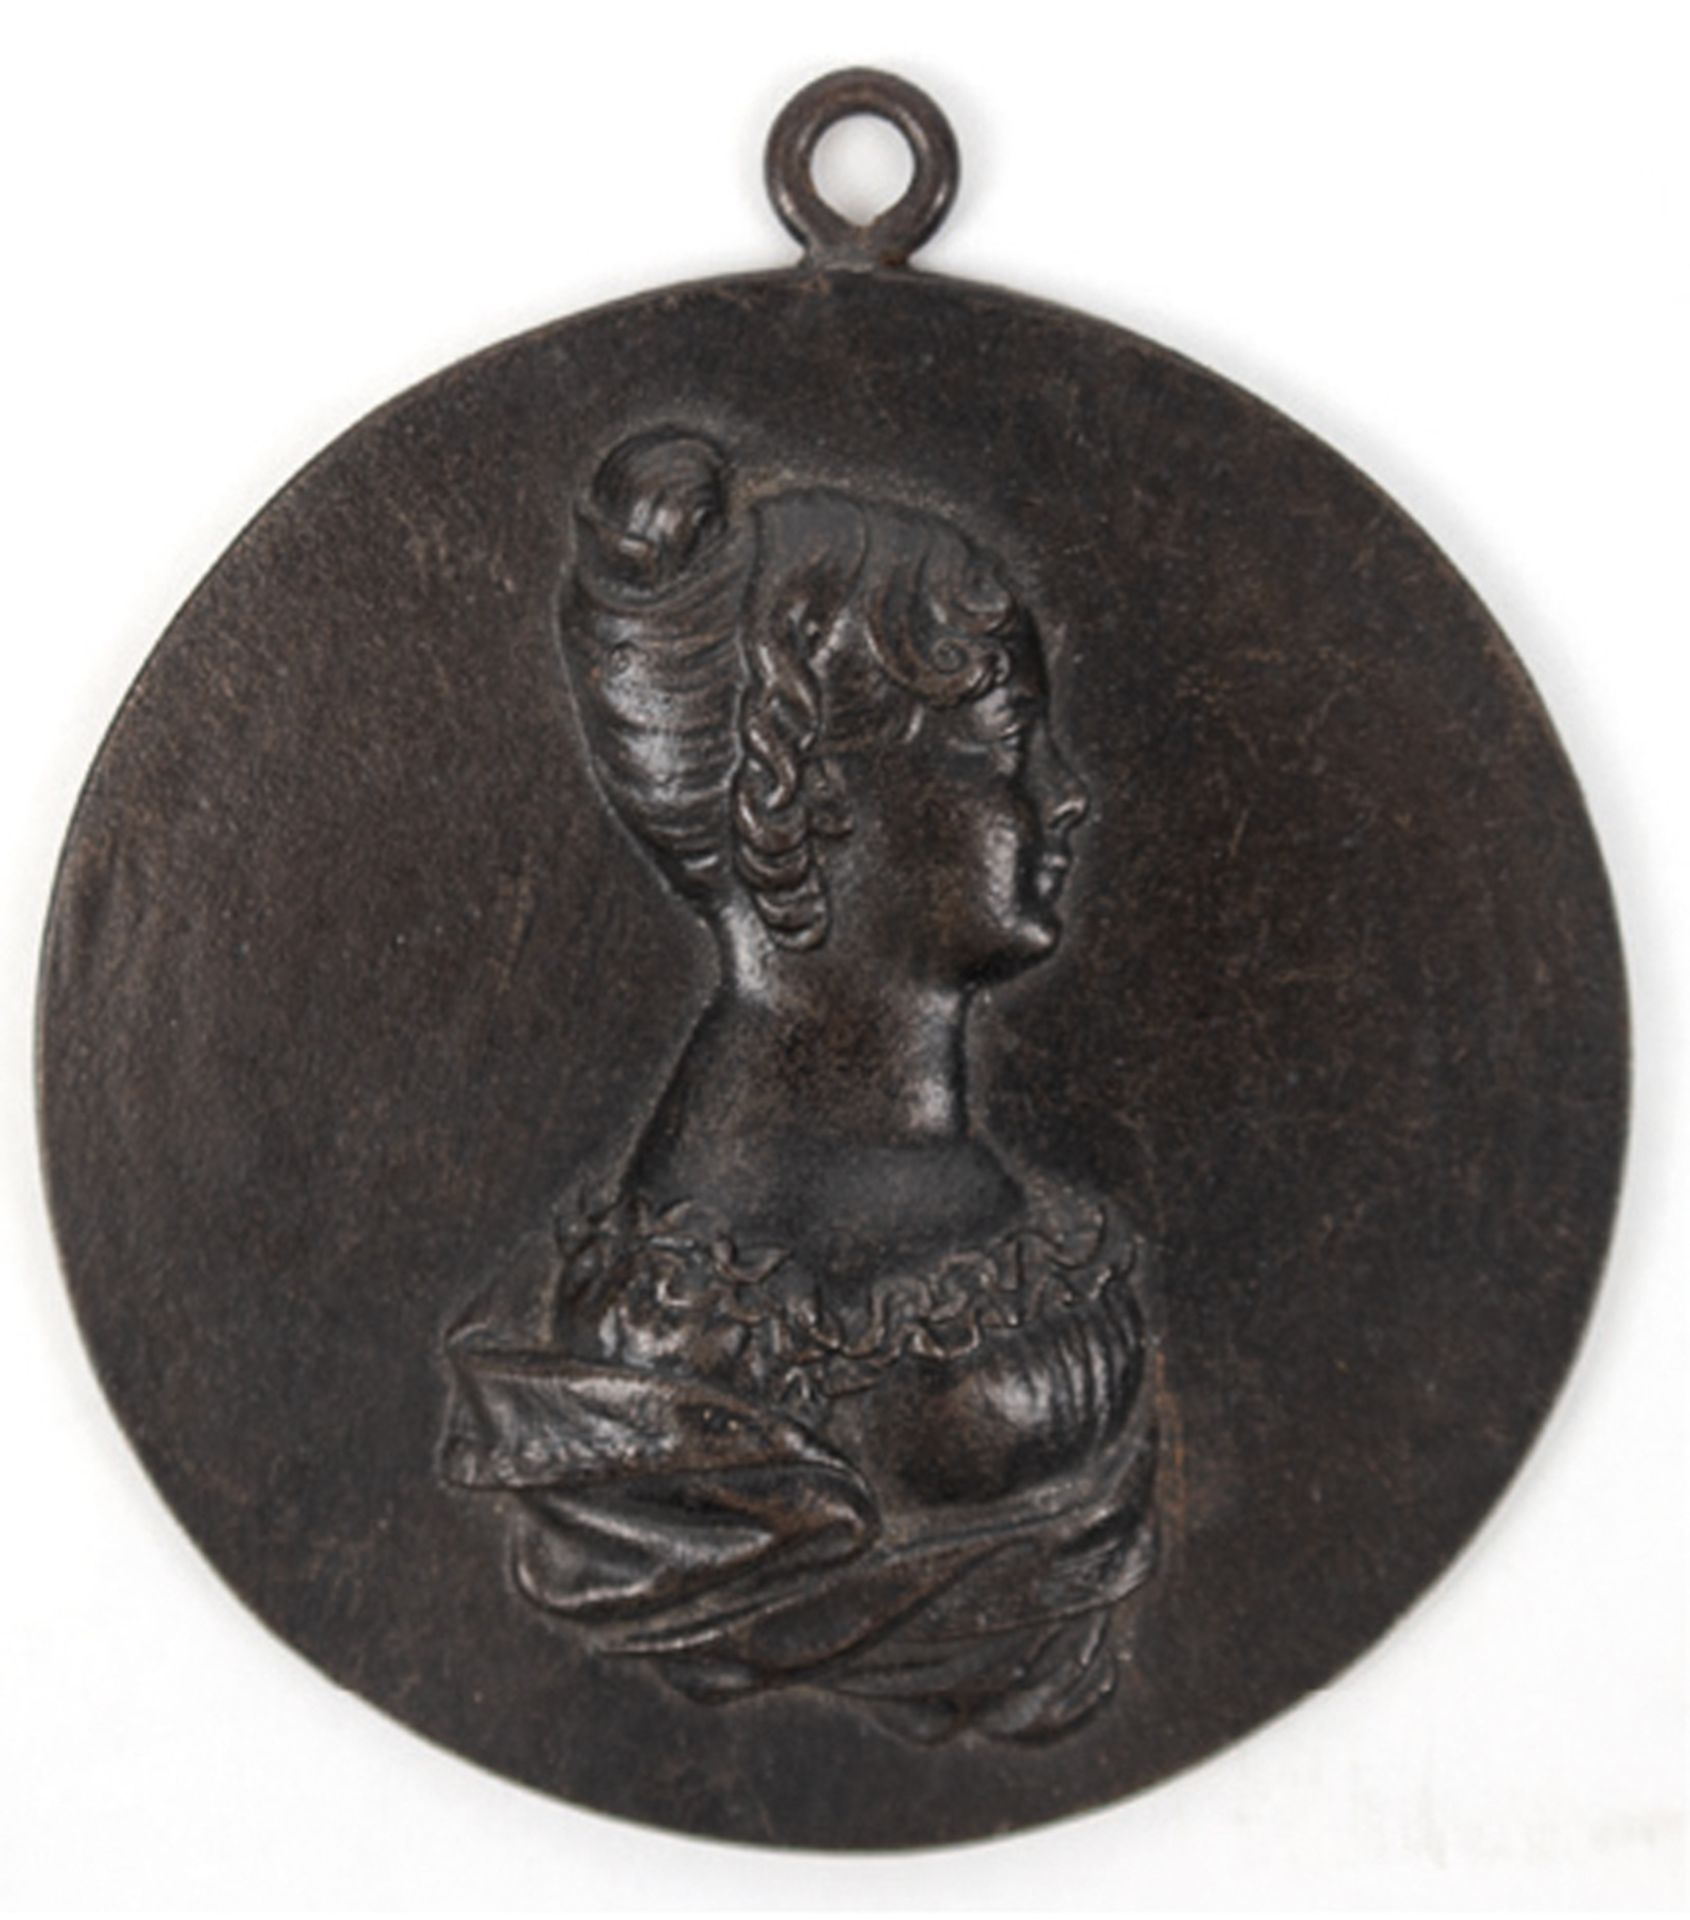 Bildnismedaillon "Porträt einer jungen Dame", Metall, 19. Jh., Dm. (ohne Öse) 8,8 cm